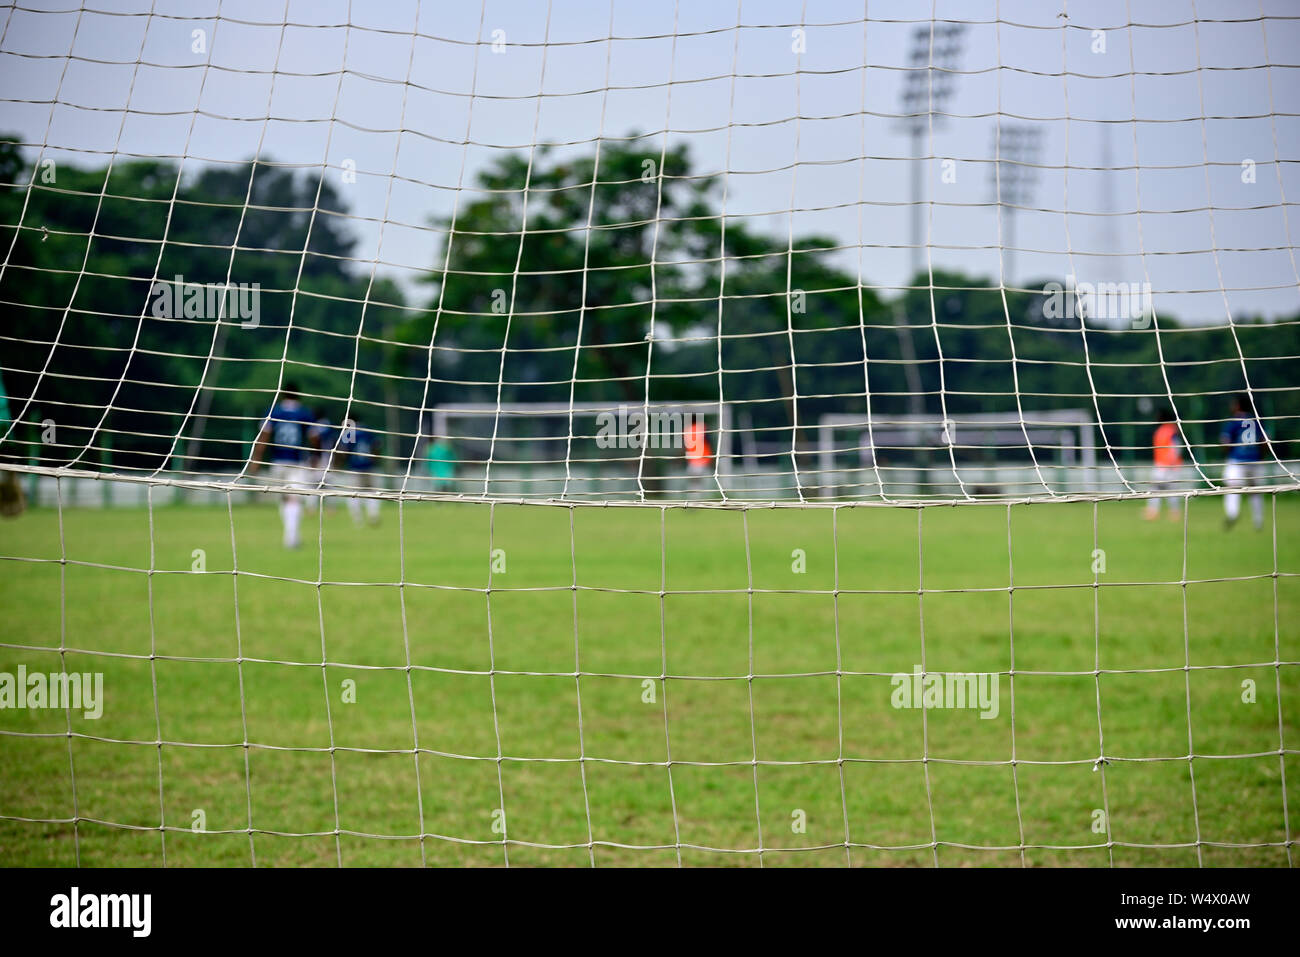 Les garçons jouent au soccer dans un terrain de football, Photo est capturé à l'origine de buts de soccer. Banque D'Images